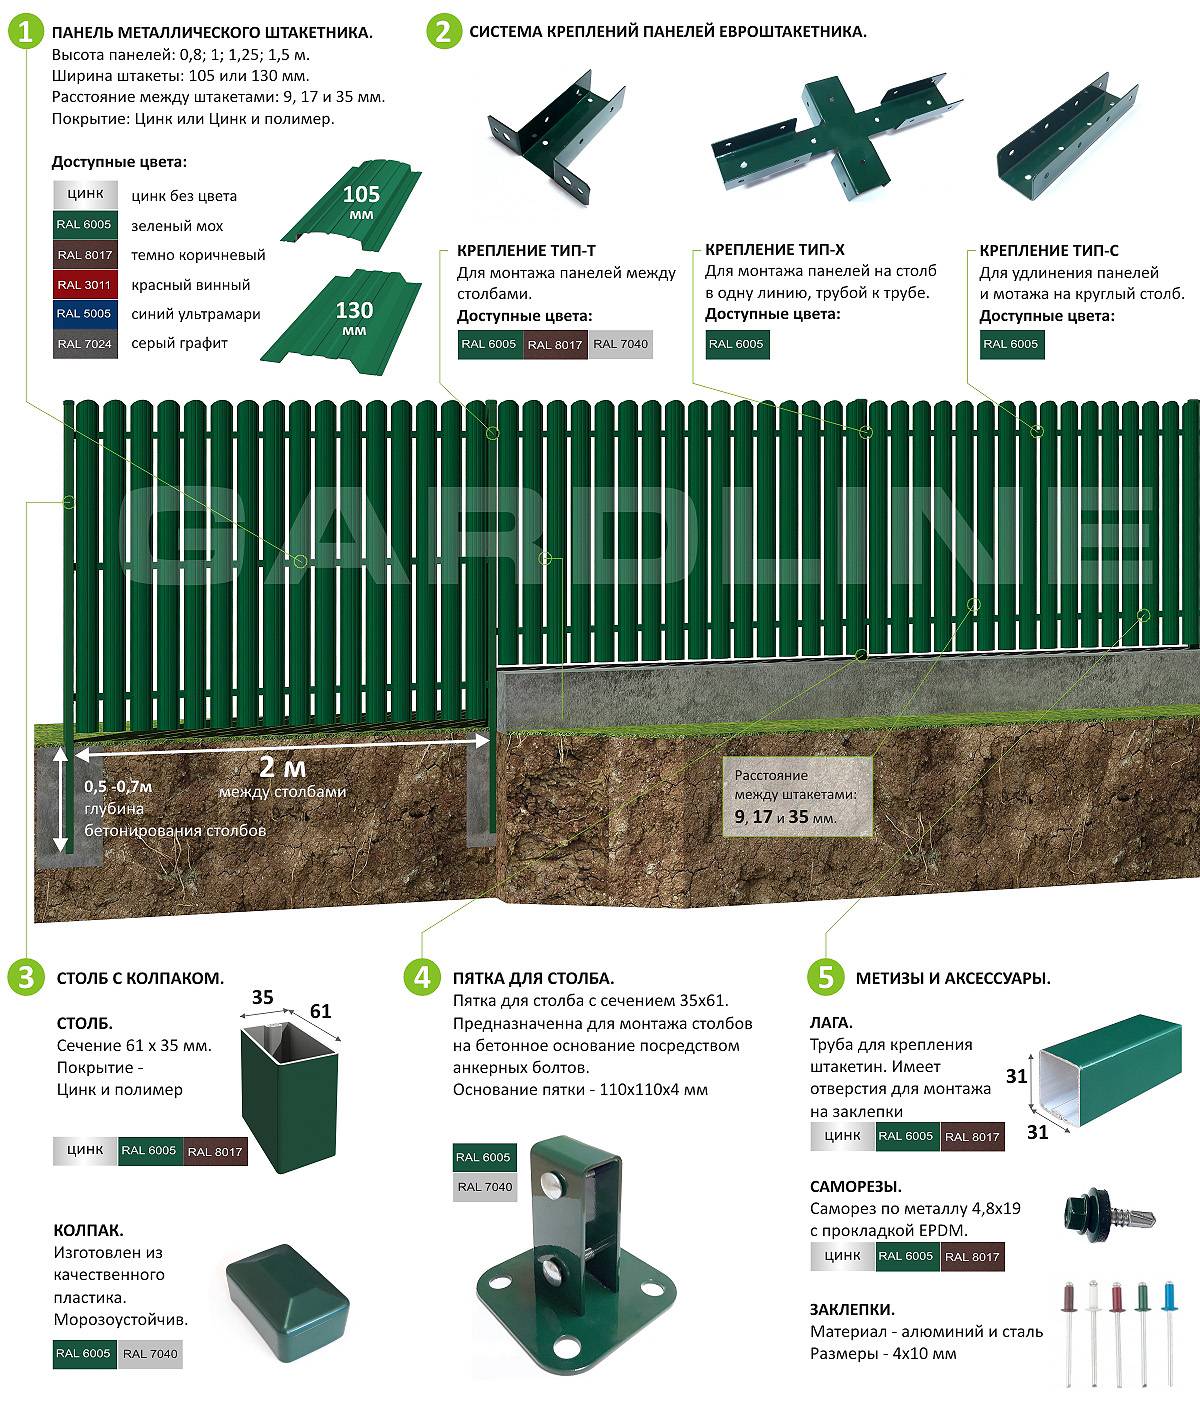 Забор из металлического штакетника (евроштакетника) своими руками | онлайн-журнал о ремонте и дизайне